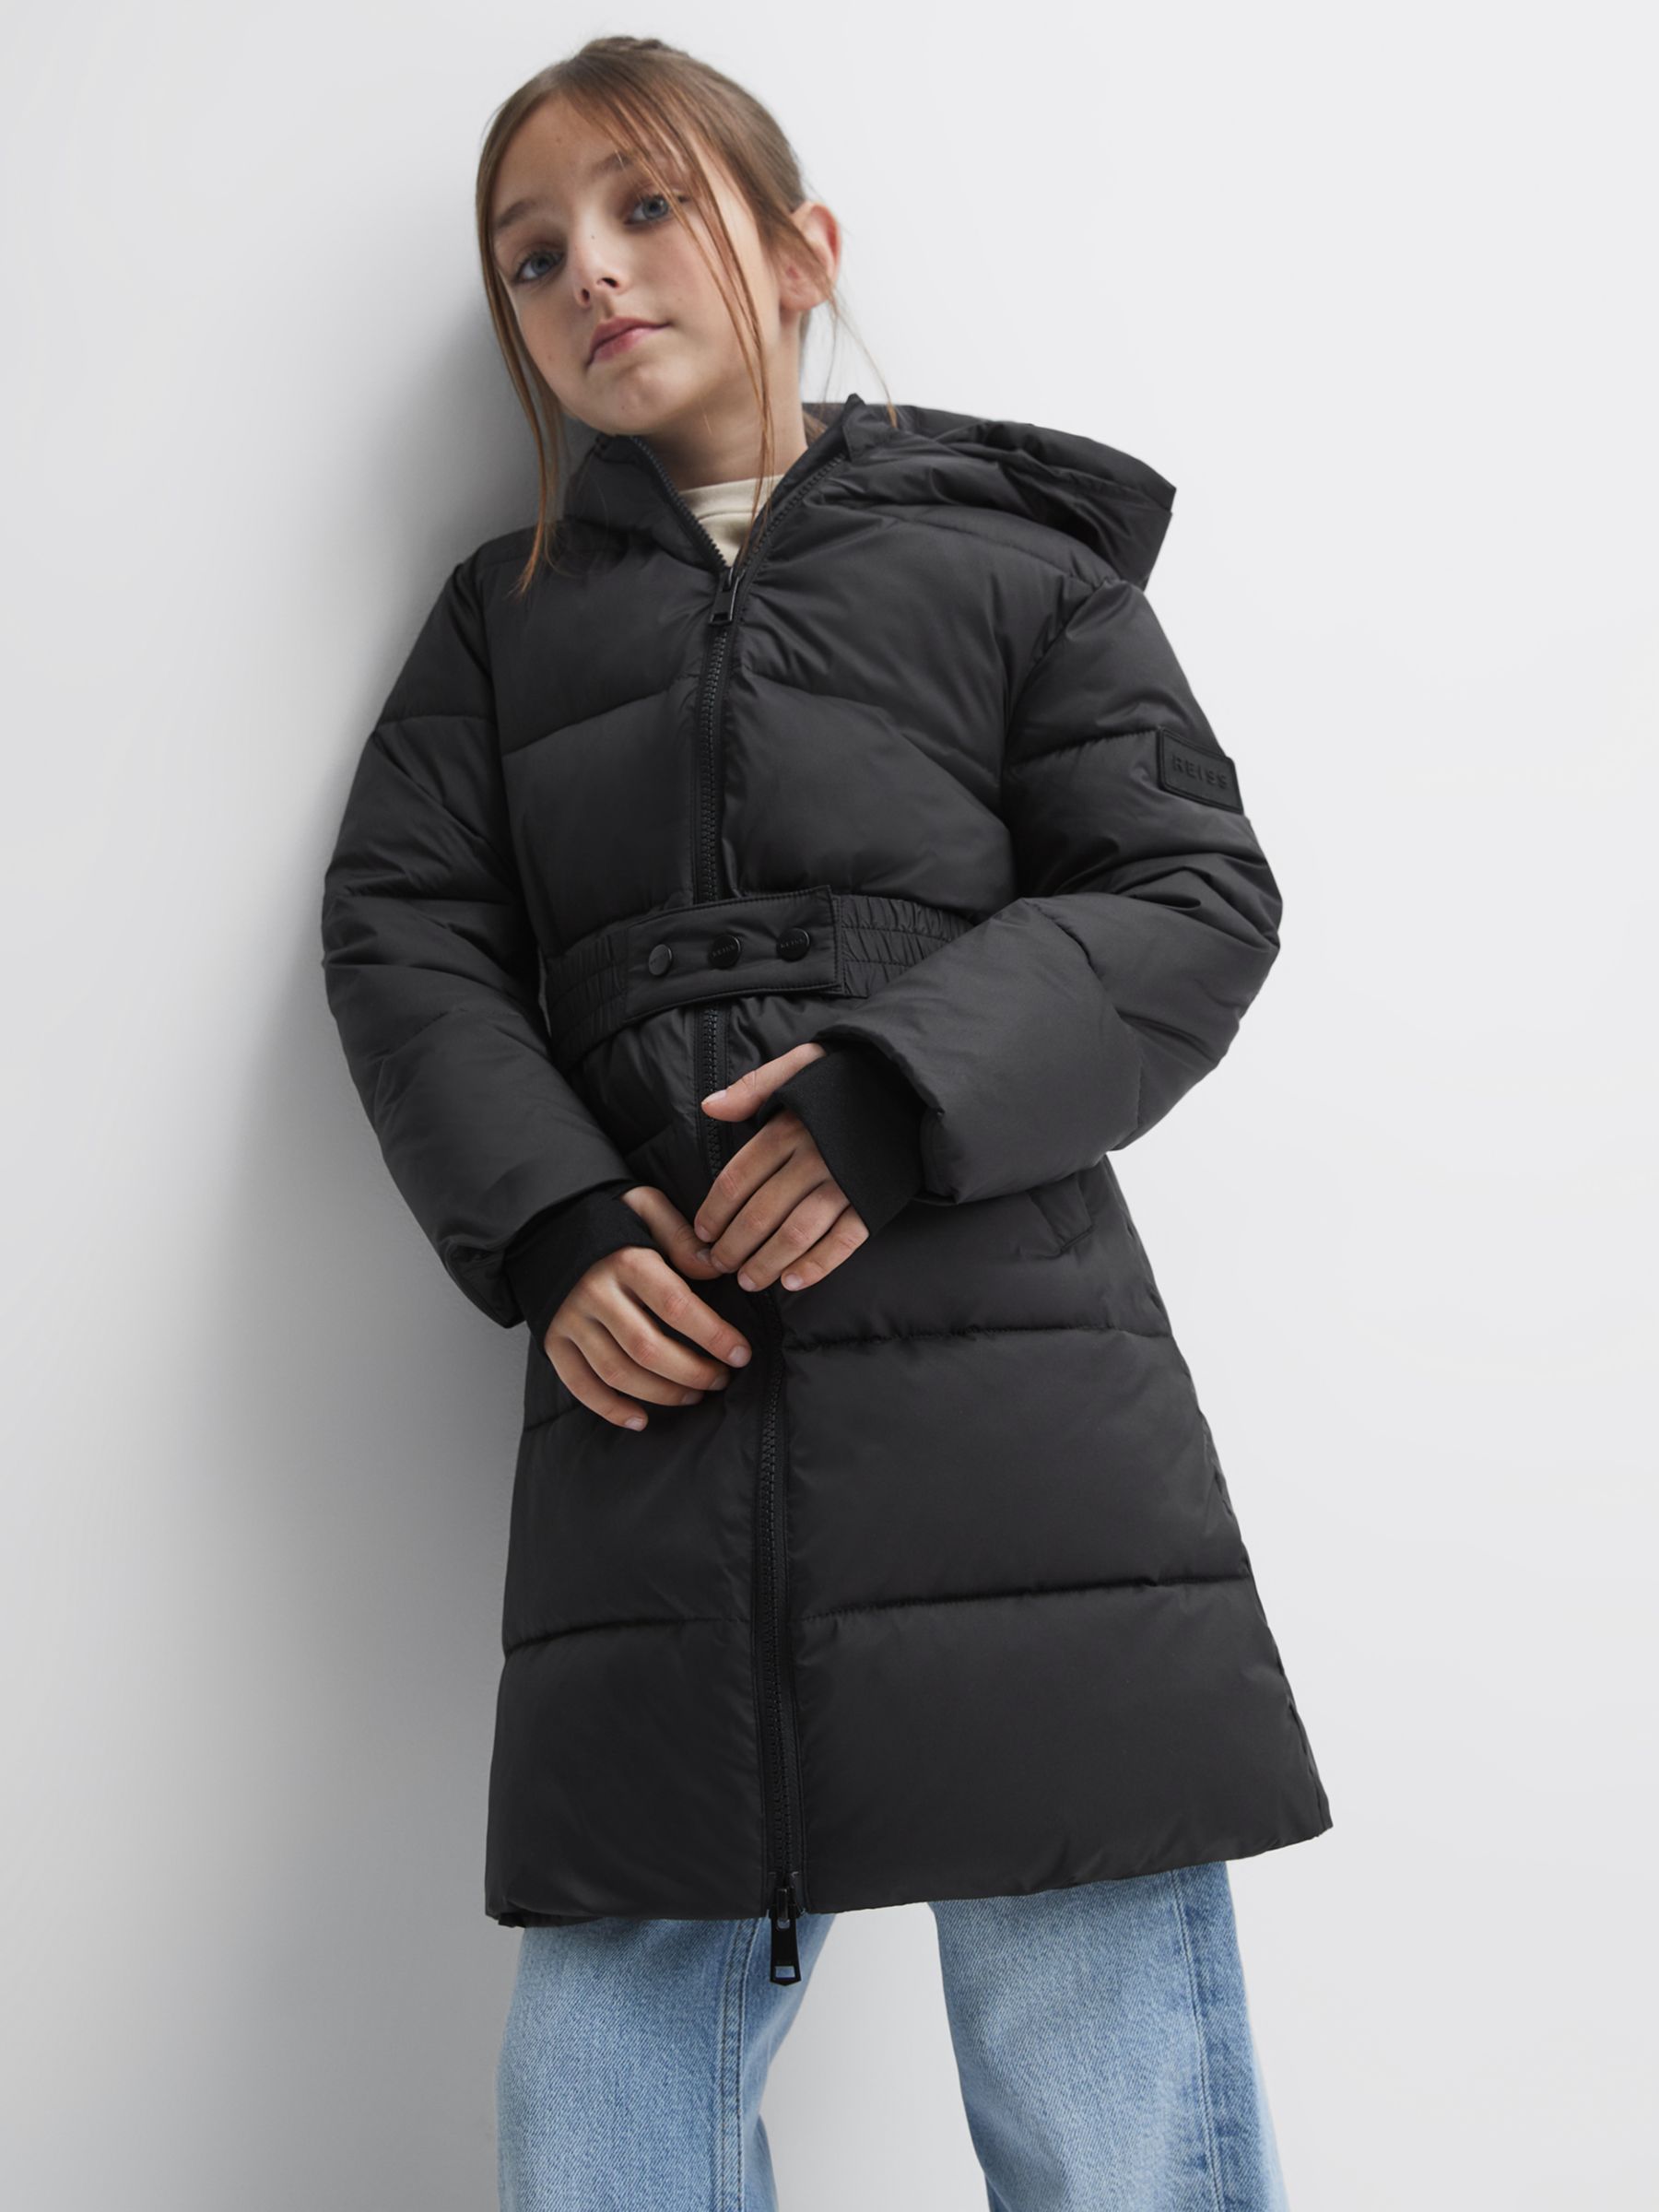 Reiss Kids' Tia Puffer Jacket, Black at John Lewis & Partners